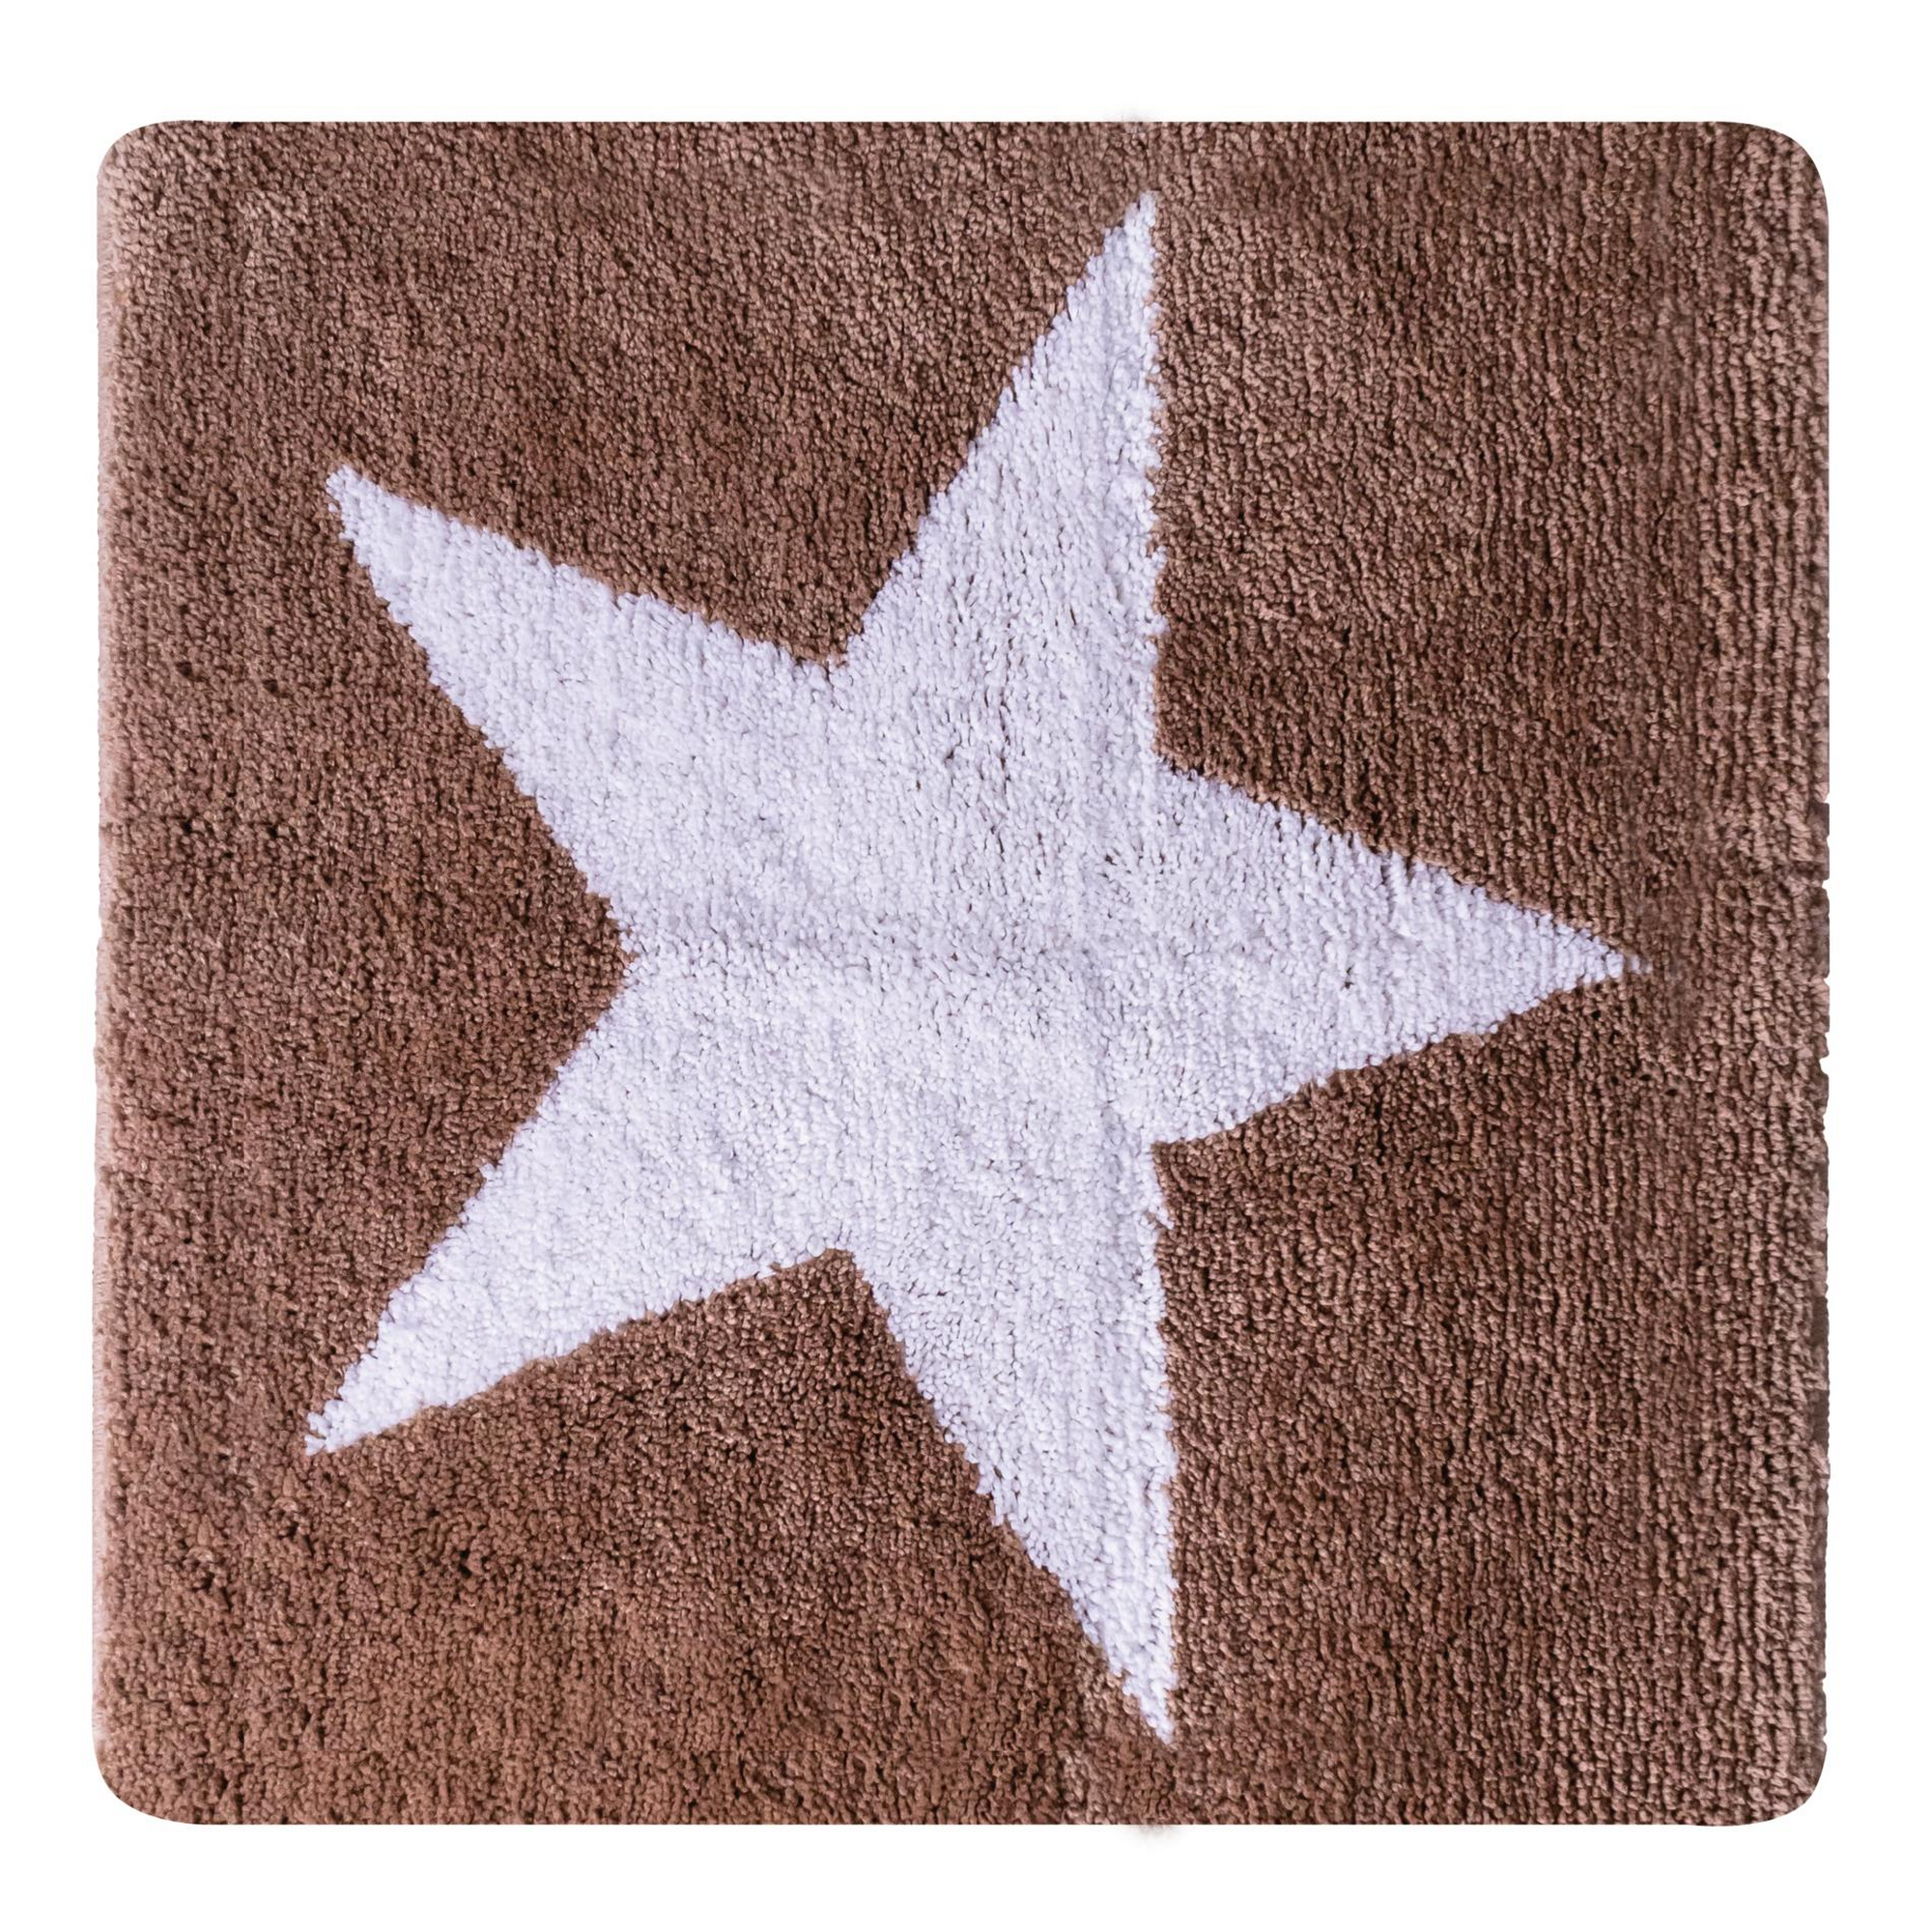 Badteppich 'Star' weiß/beige 55 x 50 cm + product picture